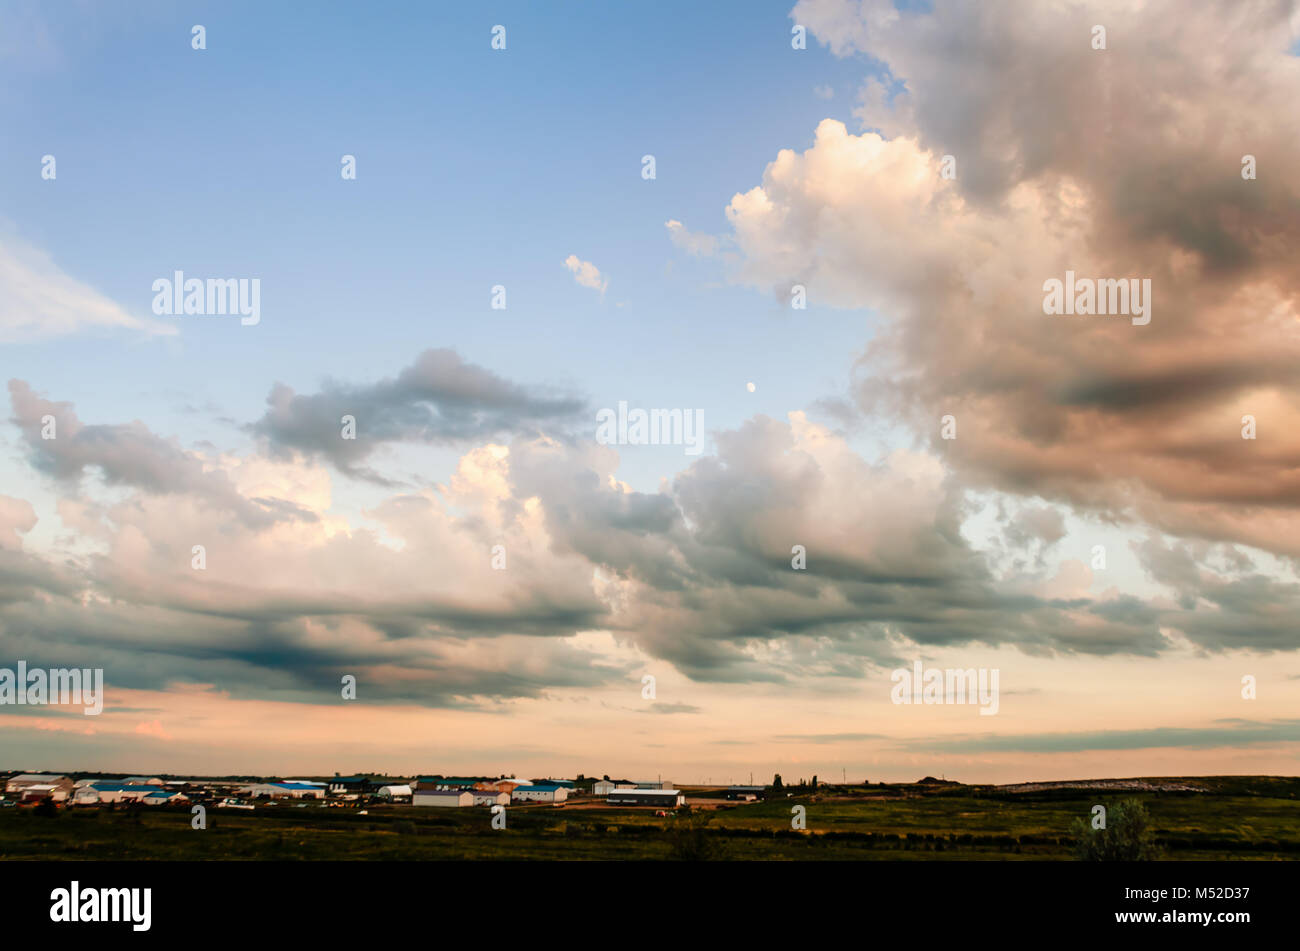 Arancione e bianco delle nuvole, evidenziata dalla Rising Sun, contro il cielo blu, edifici agricoli e cespugli verdi in background Foto Stock